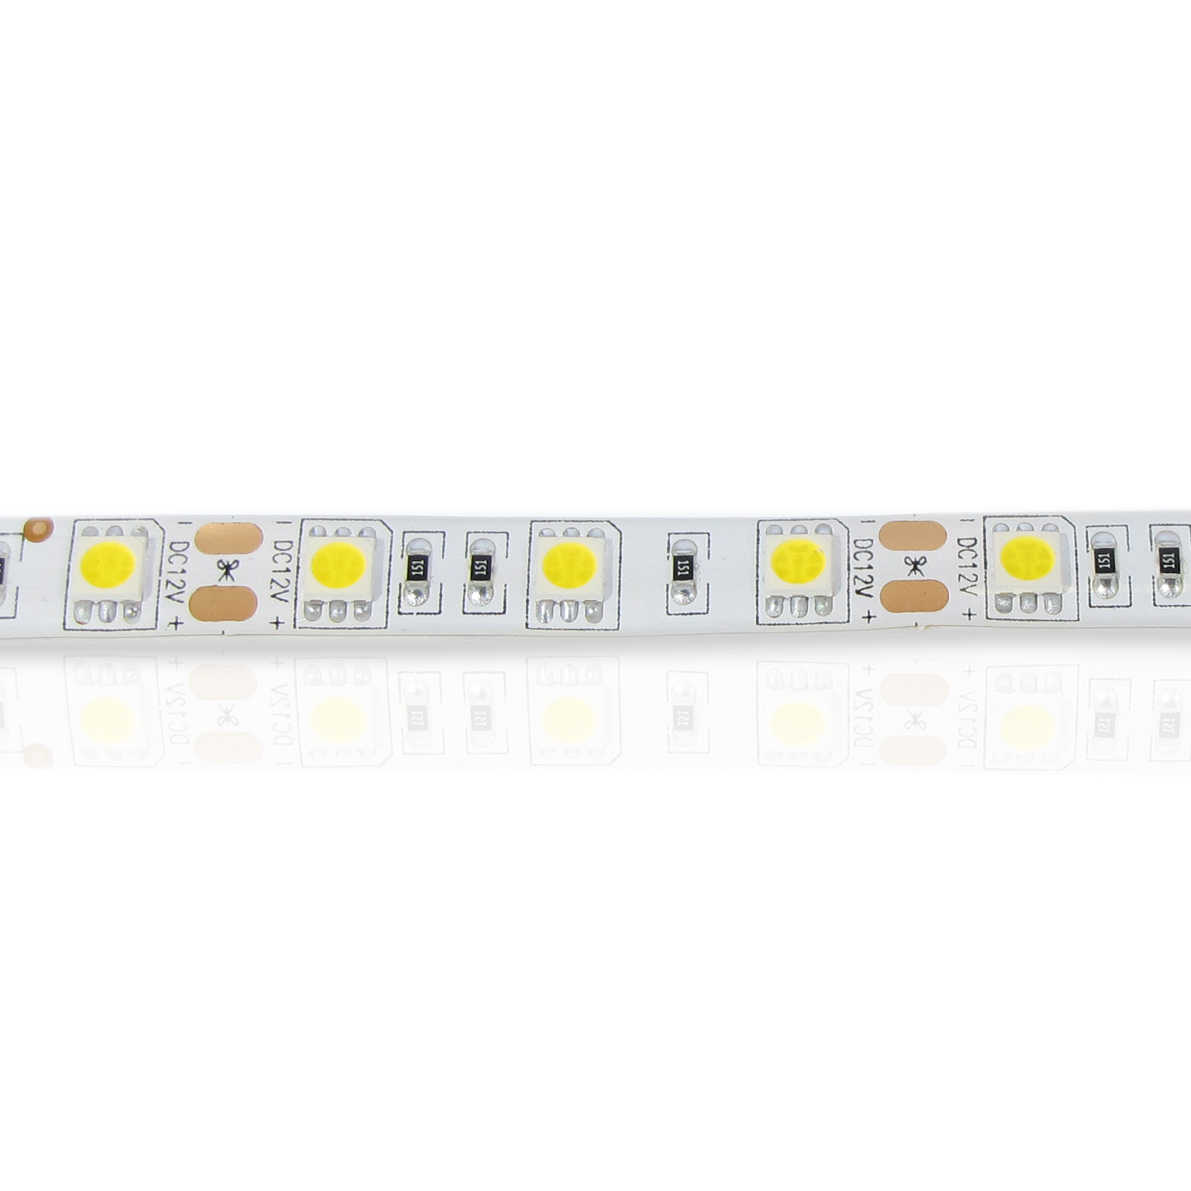 светодиодная лента standart class, 5050, 60led/m, warm white, 12v, ip65, артикул 52718